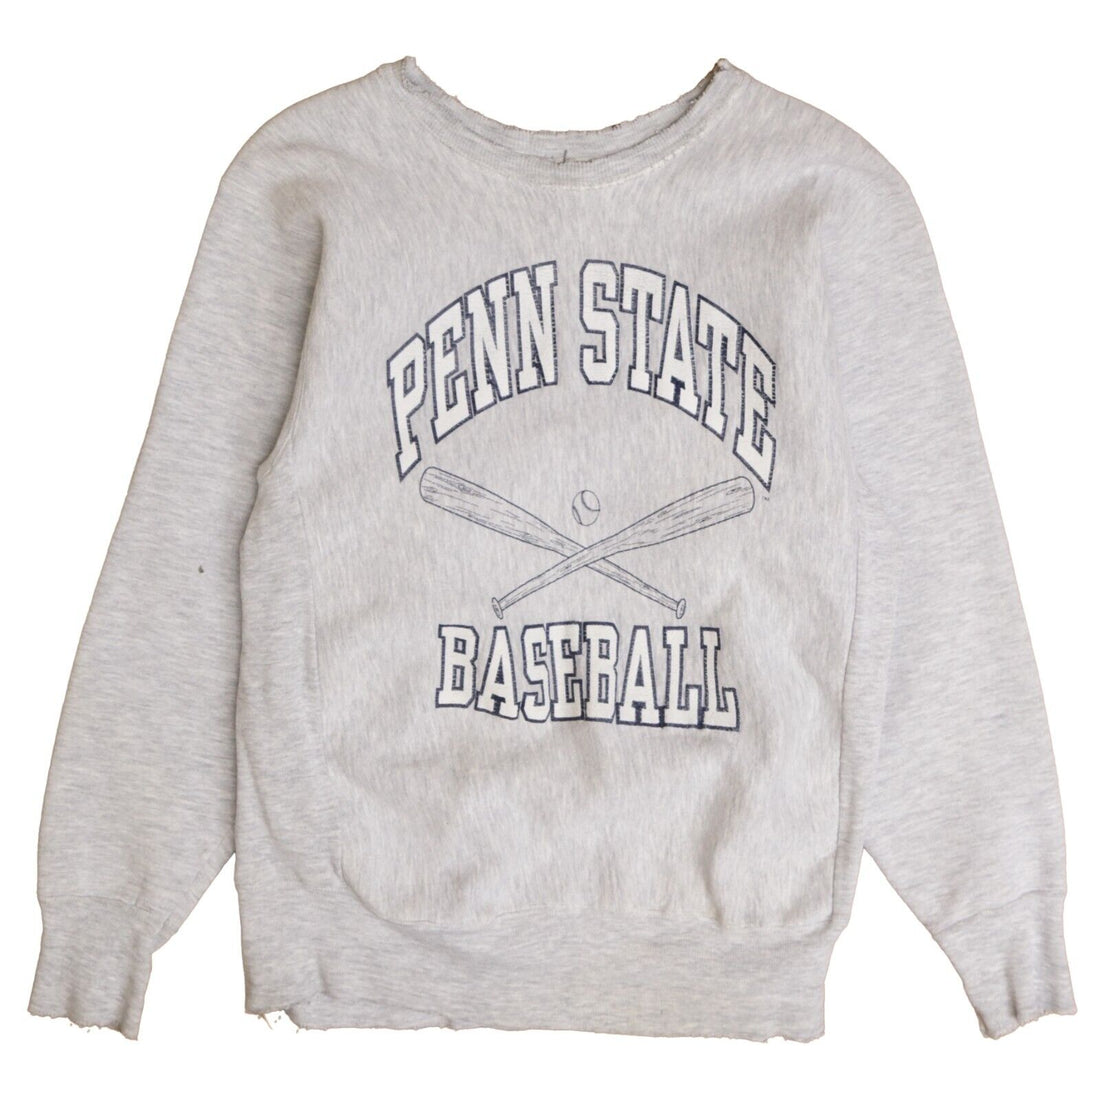 Vintage Penn State Baseball Sweatshirt Crewneck Size Medium 90s